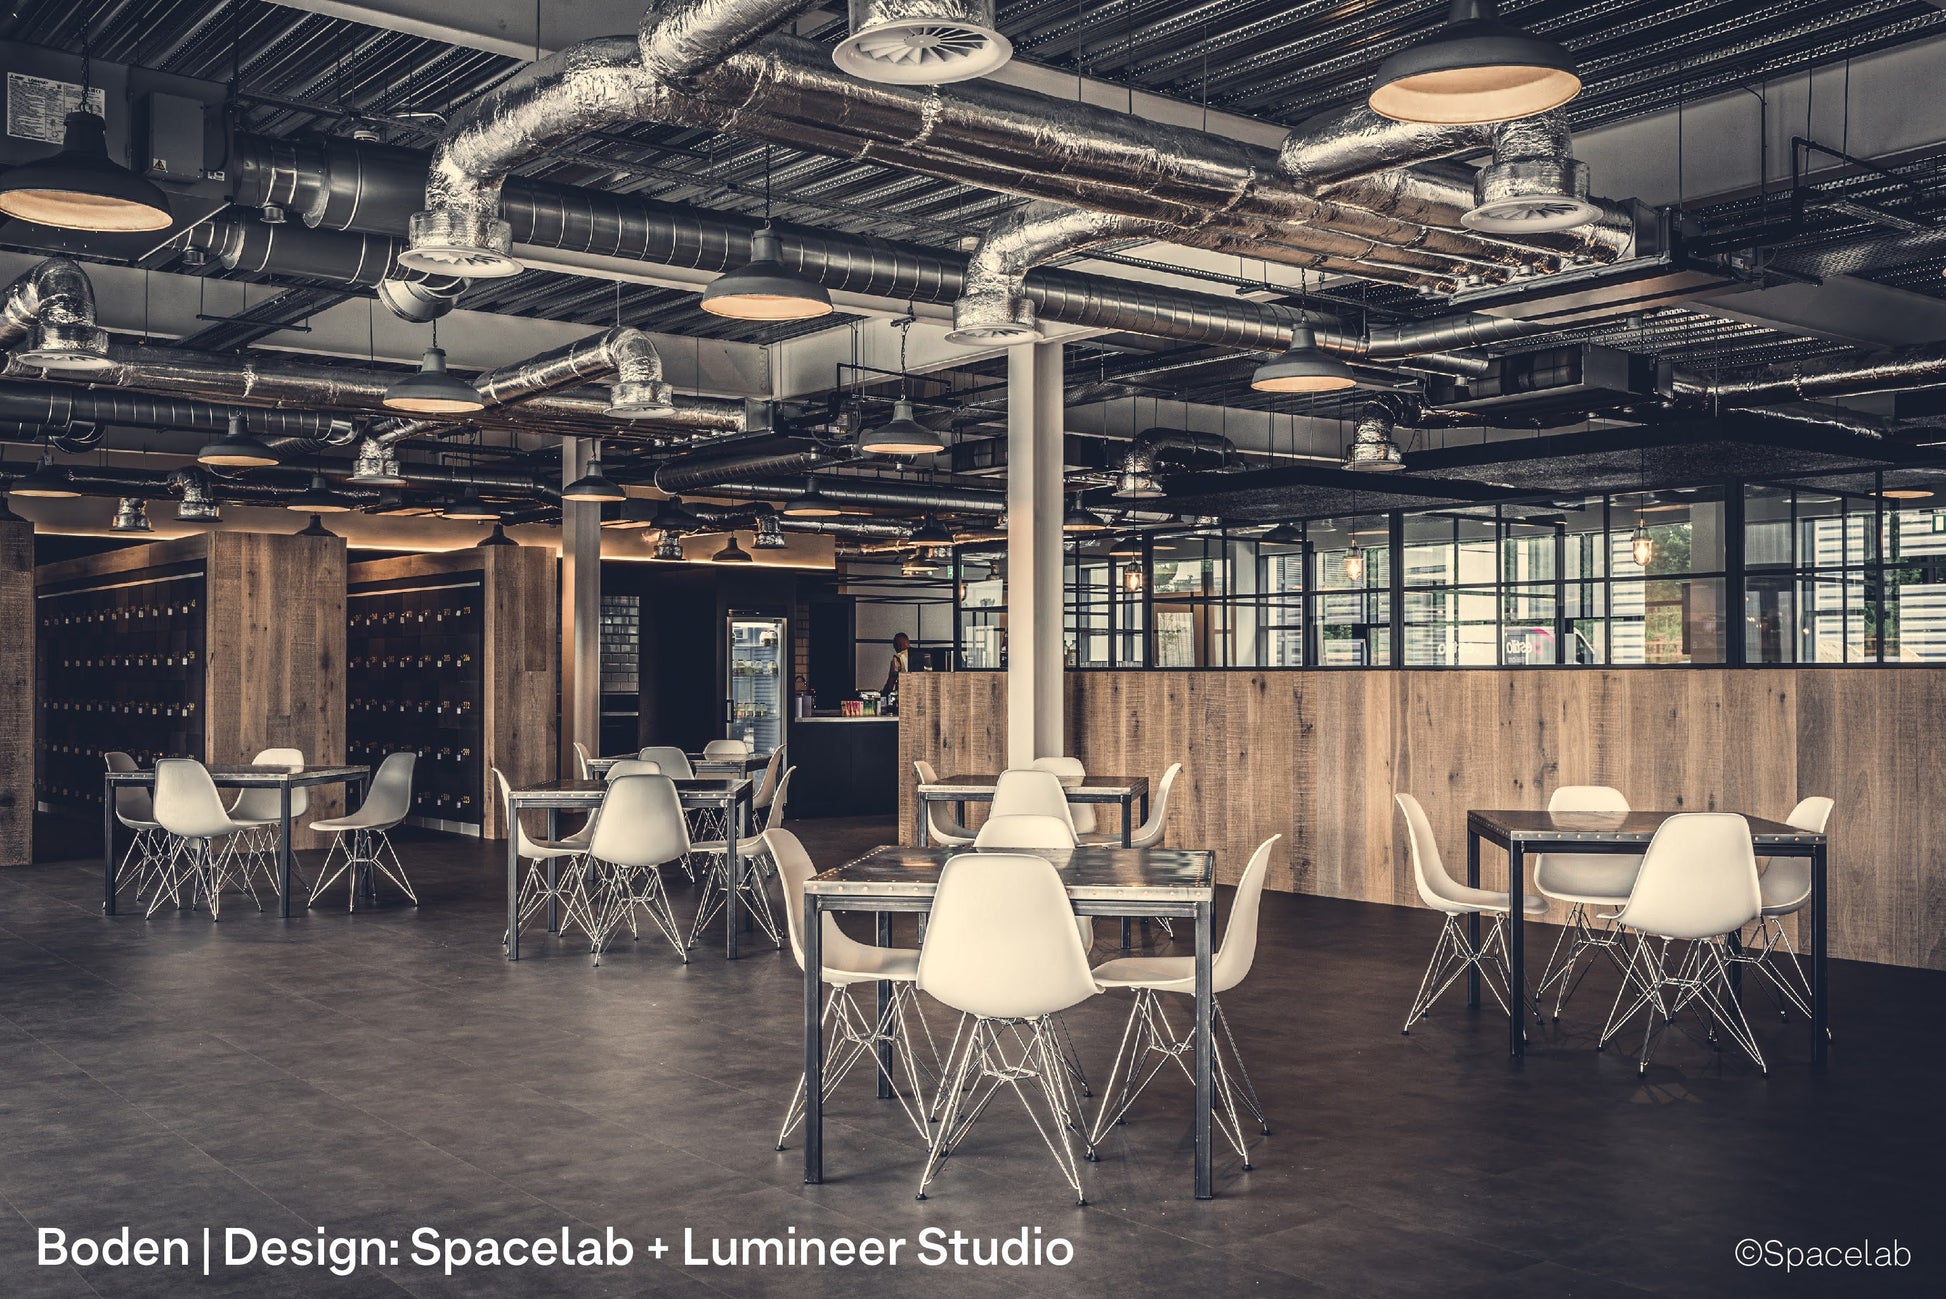 Boden. Design: Spacelb + Lumineer Studio. Restaurant lighting by Factorylux.